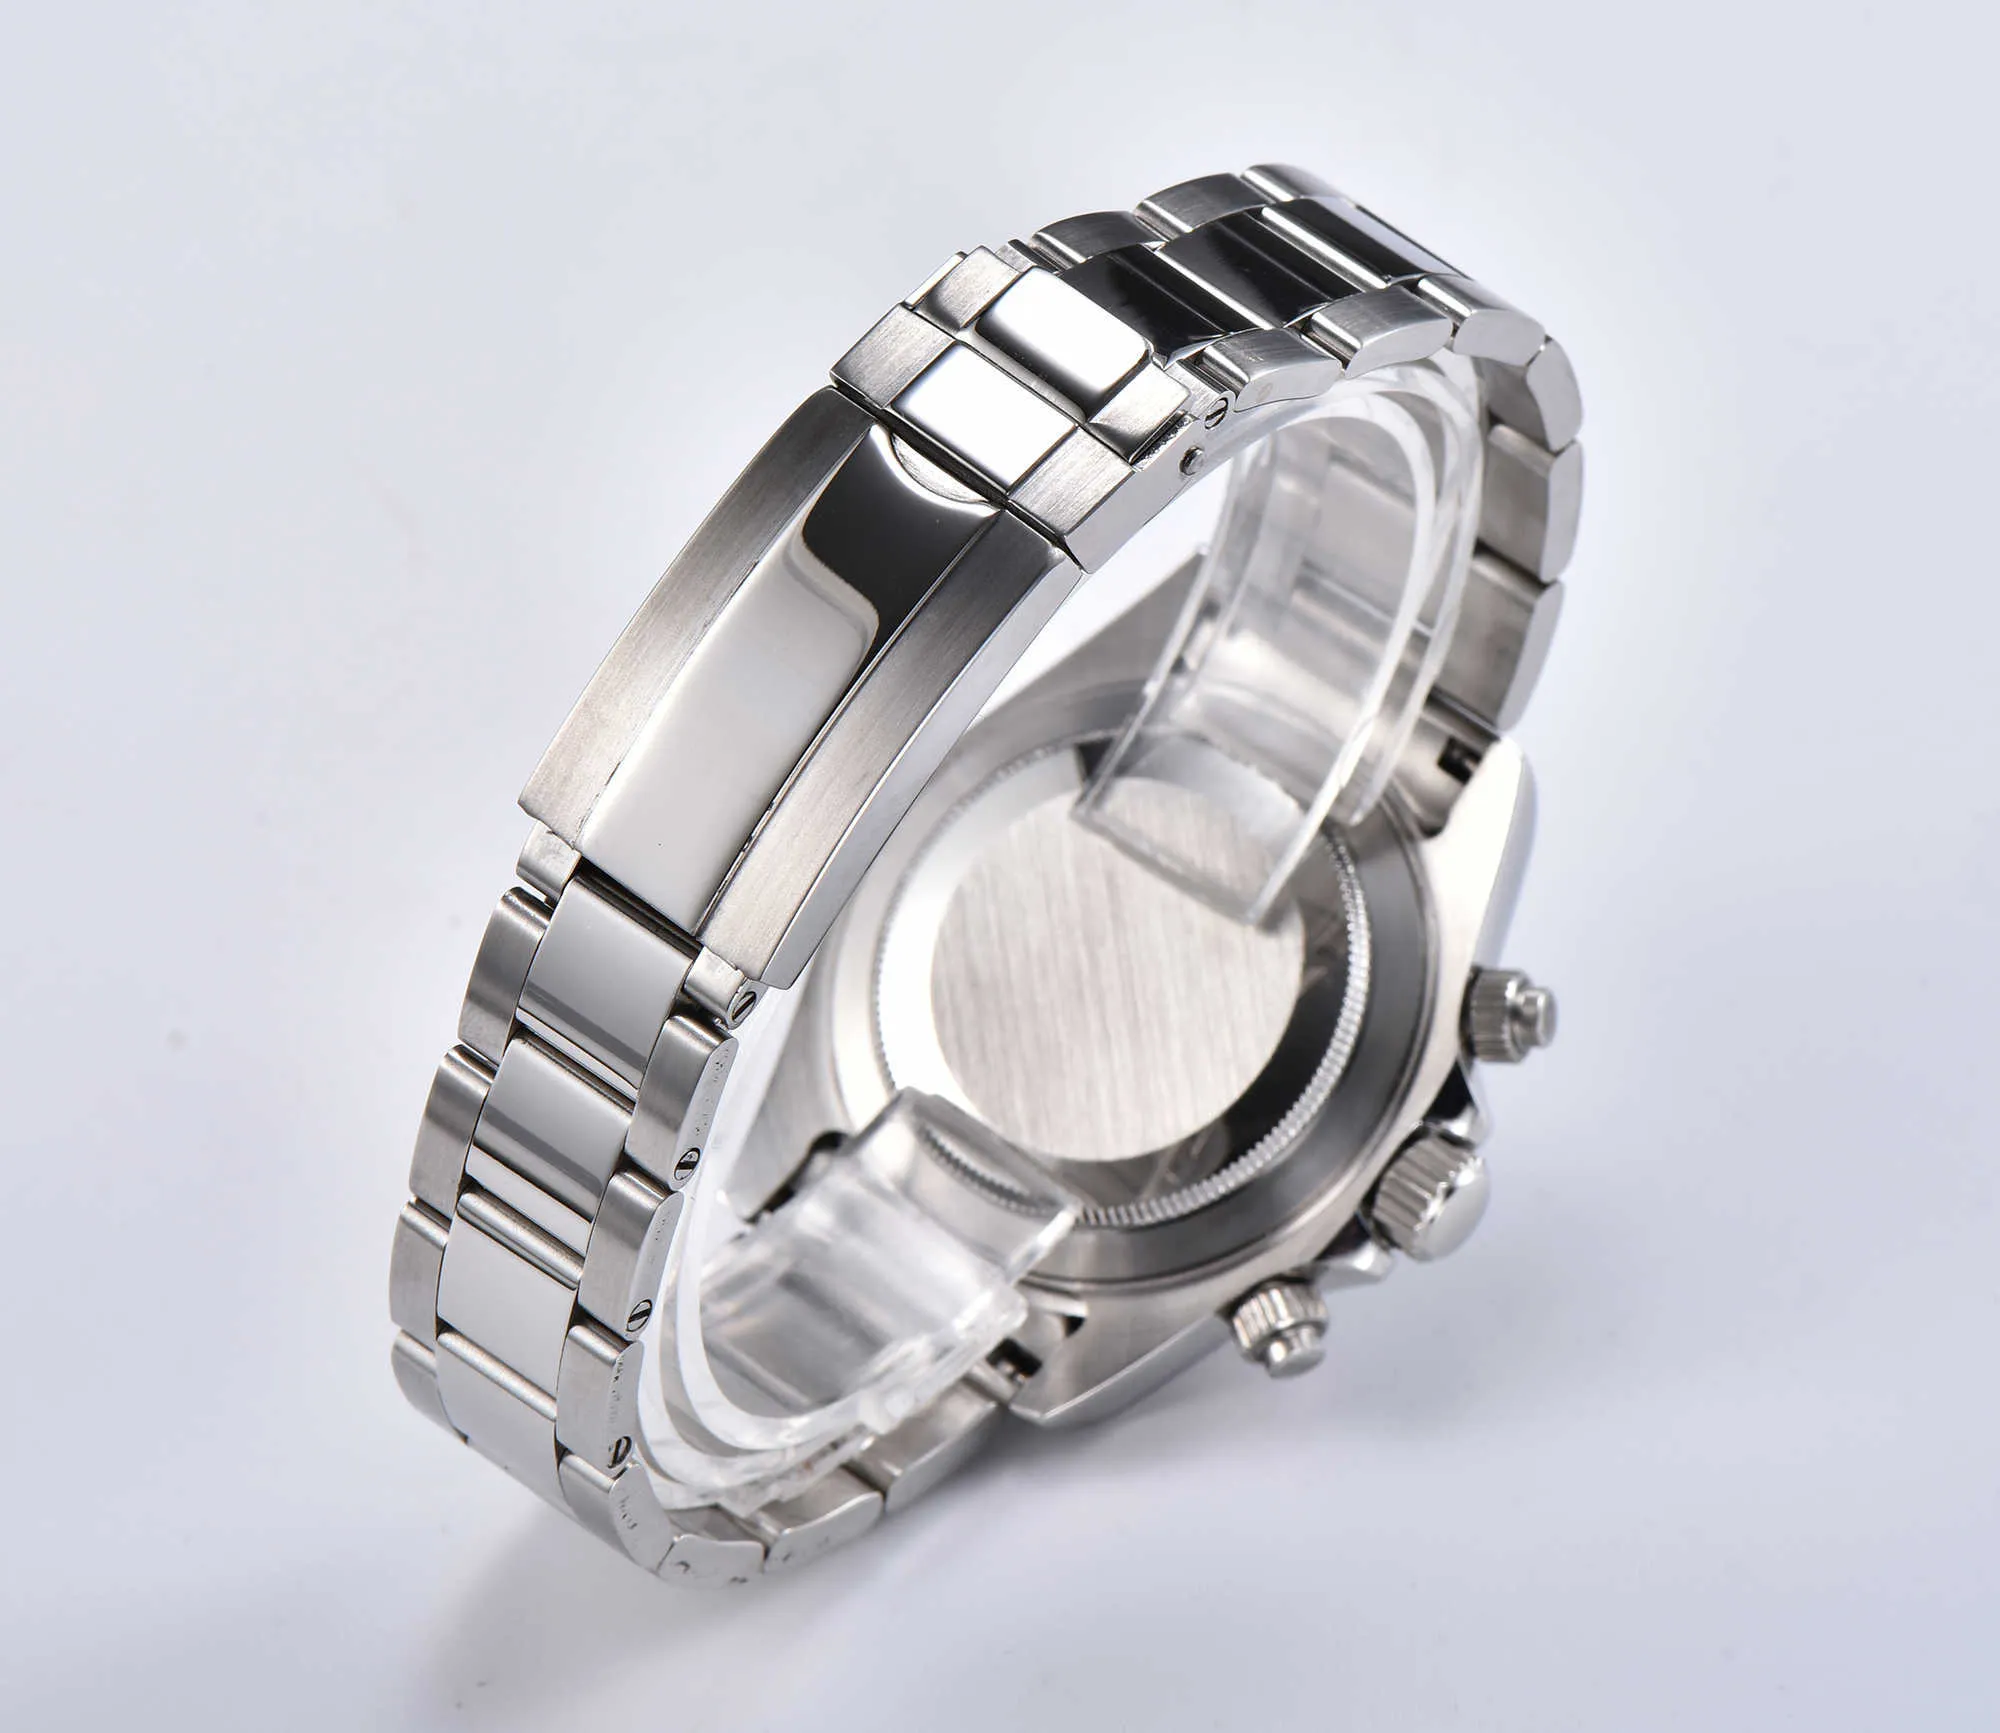 Relógio cronógrafo japonês vk63 movimento de quartzo 39mm mostrador estéril mãos luminosas safira caixa de fibra de vidro pulseira to637 h1012254j